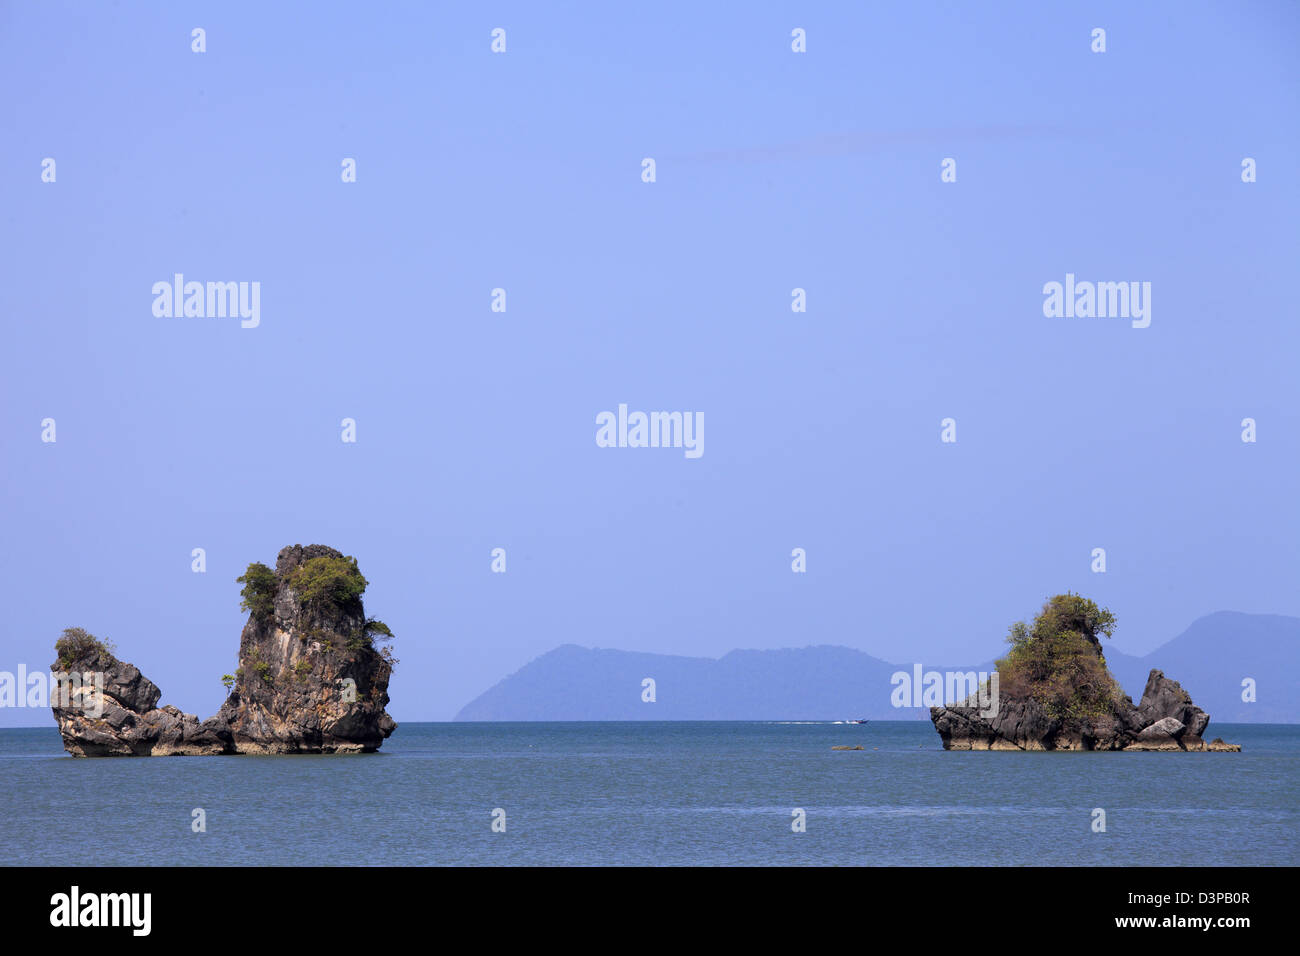 Malaysia, Kedah, Langkawi Island, Tanjung Rhu, Pasir & Gasing Islets, Stock Photo